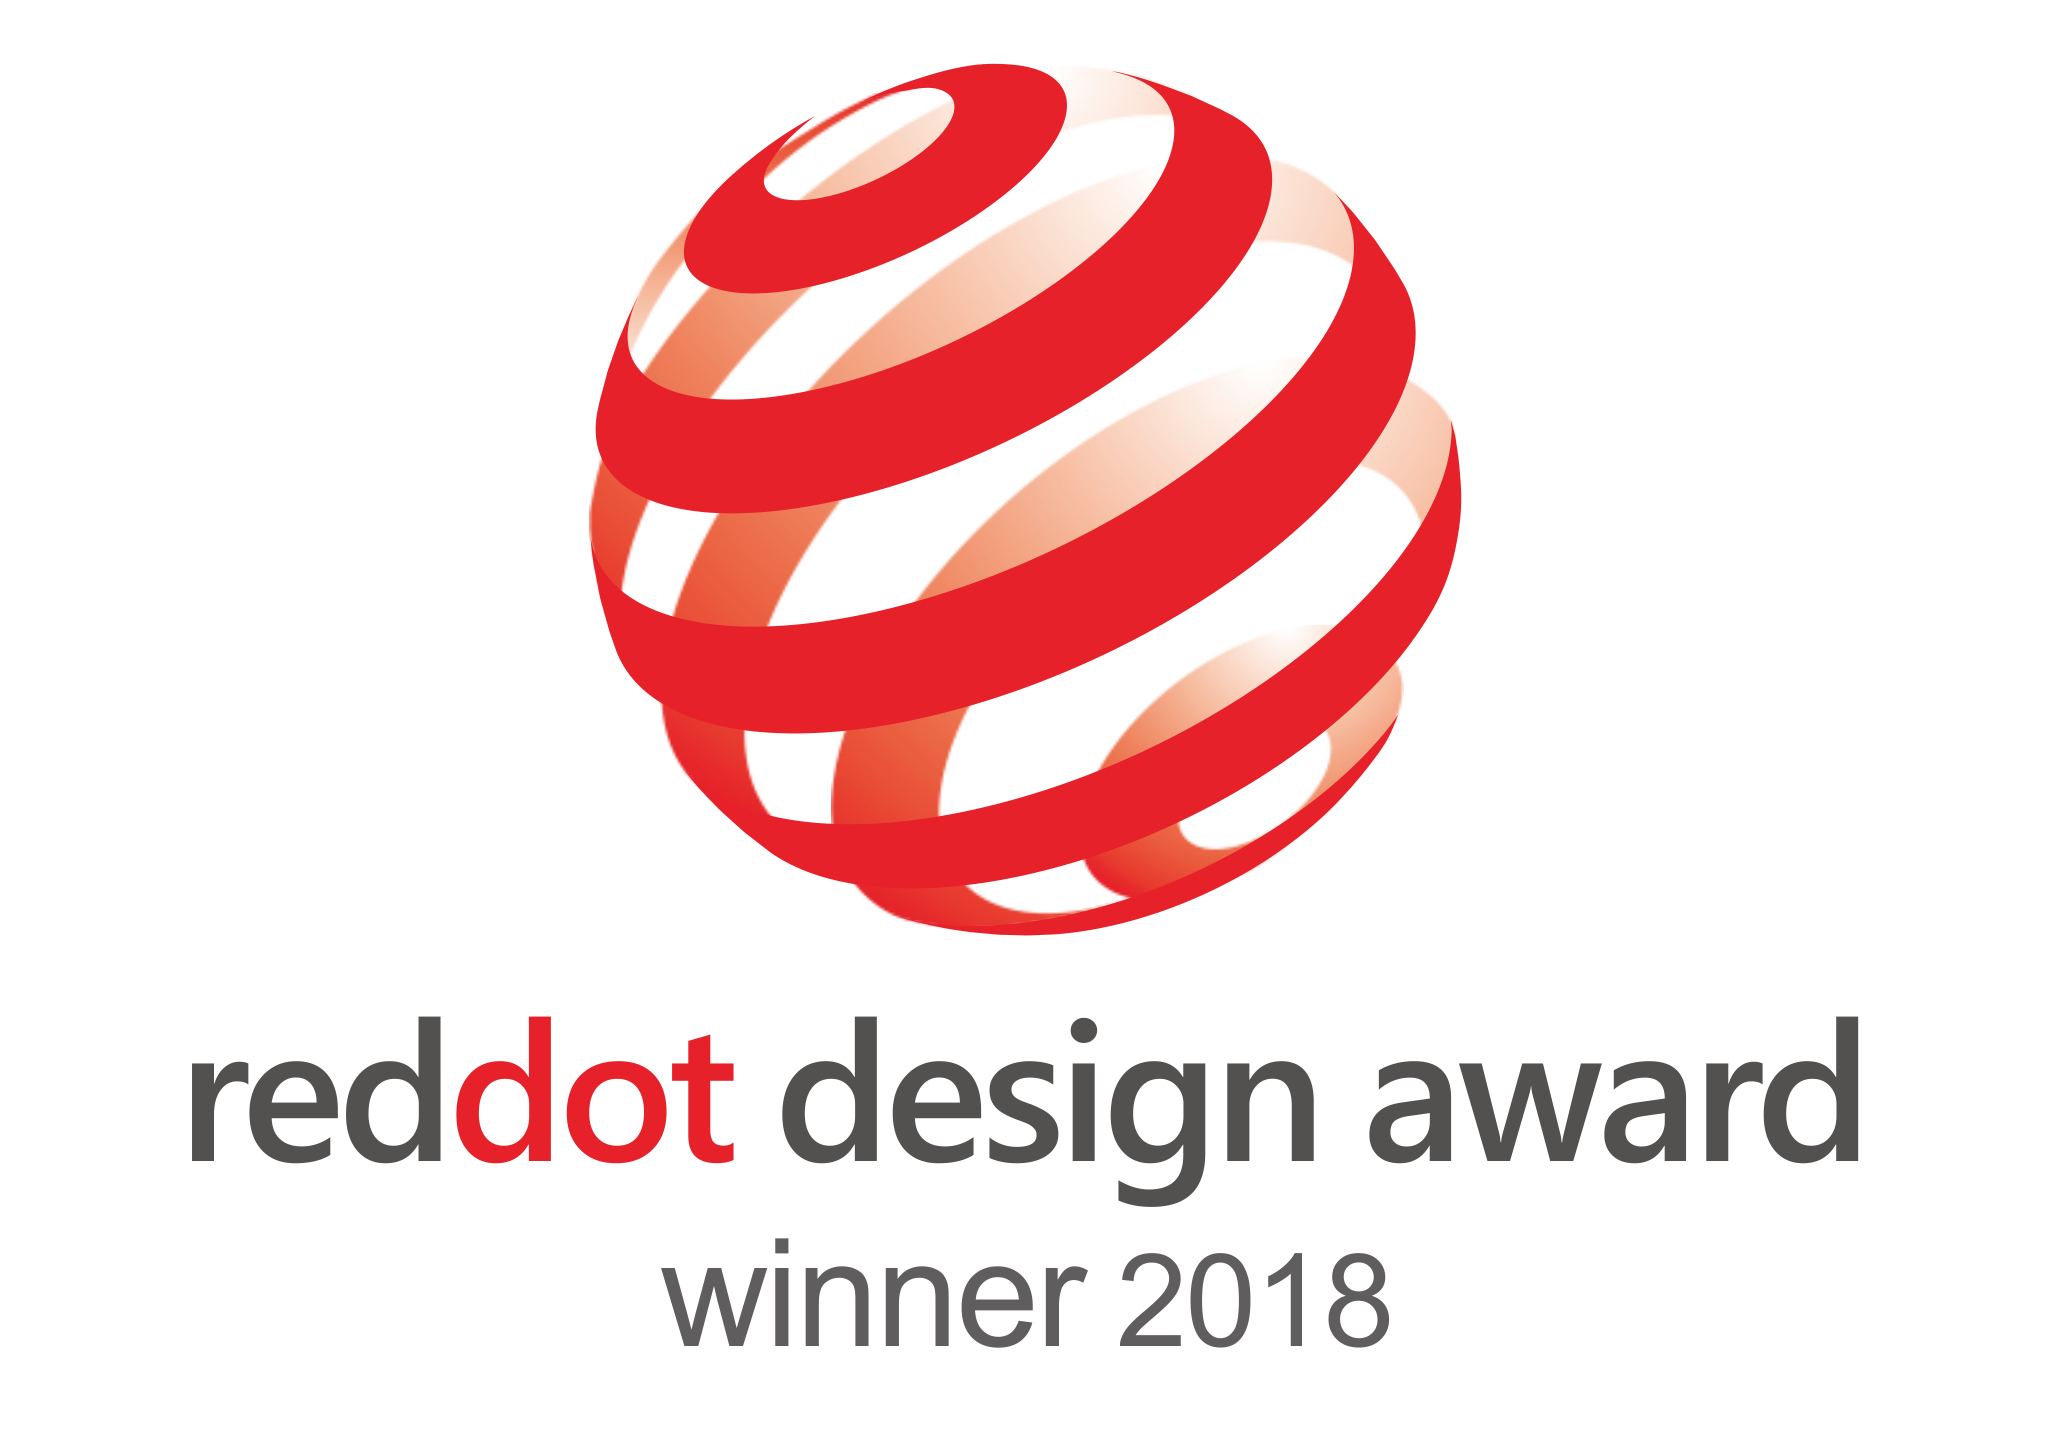 Winner of the 2018 German Red Dot Design Award